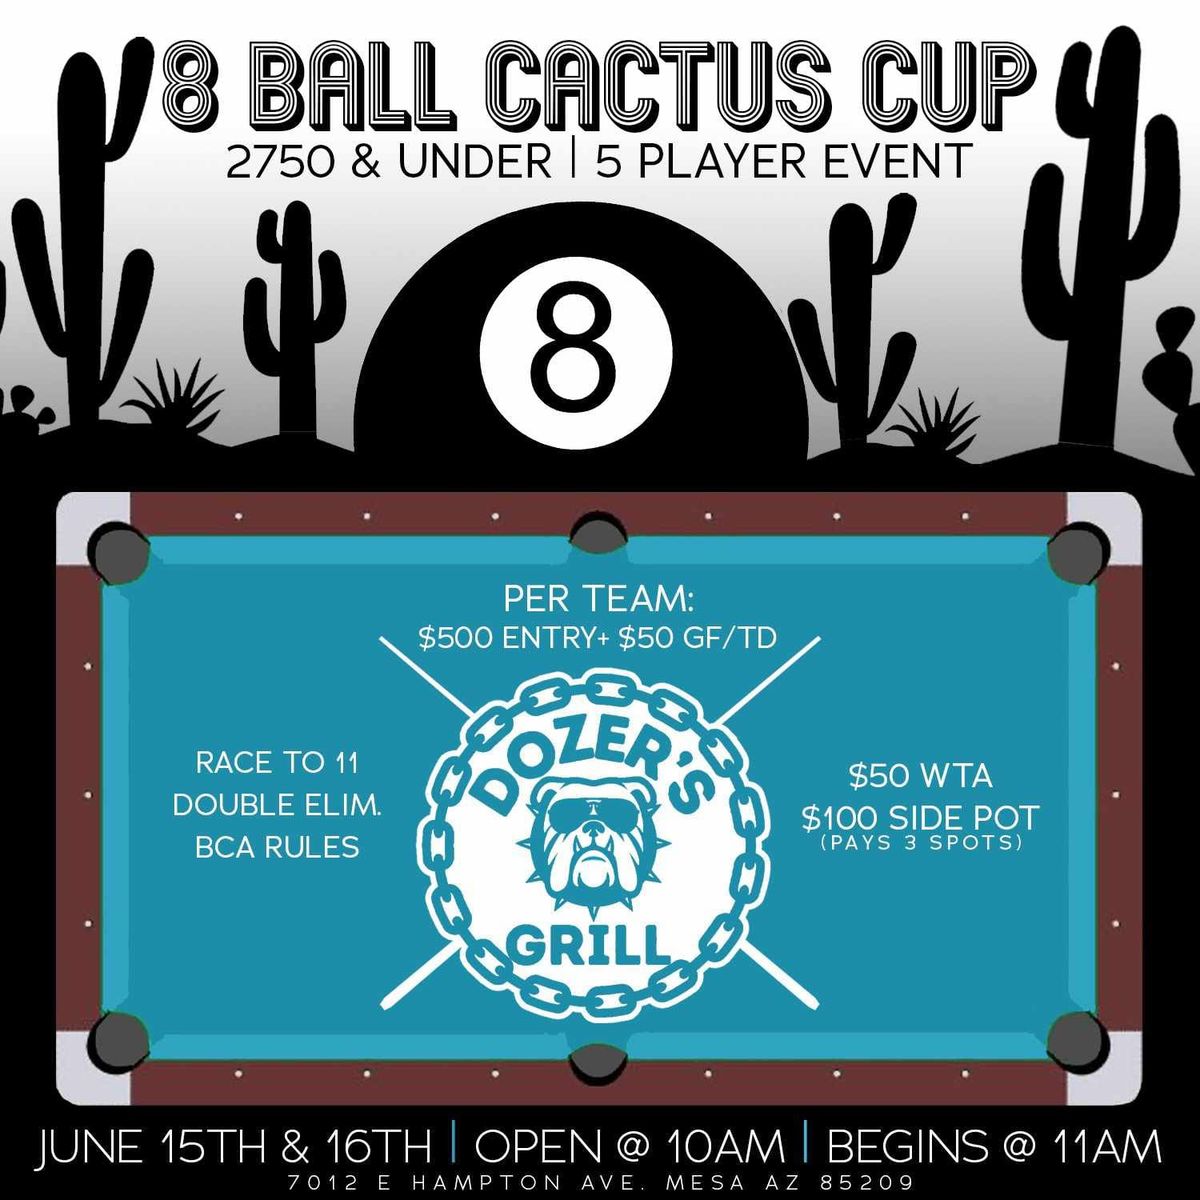 The Brandon Langan Cactus Cup @ Dozer's Grill 7012 E Hampton Ave Mesa AZ 85209